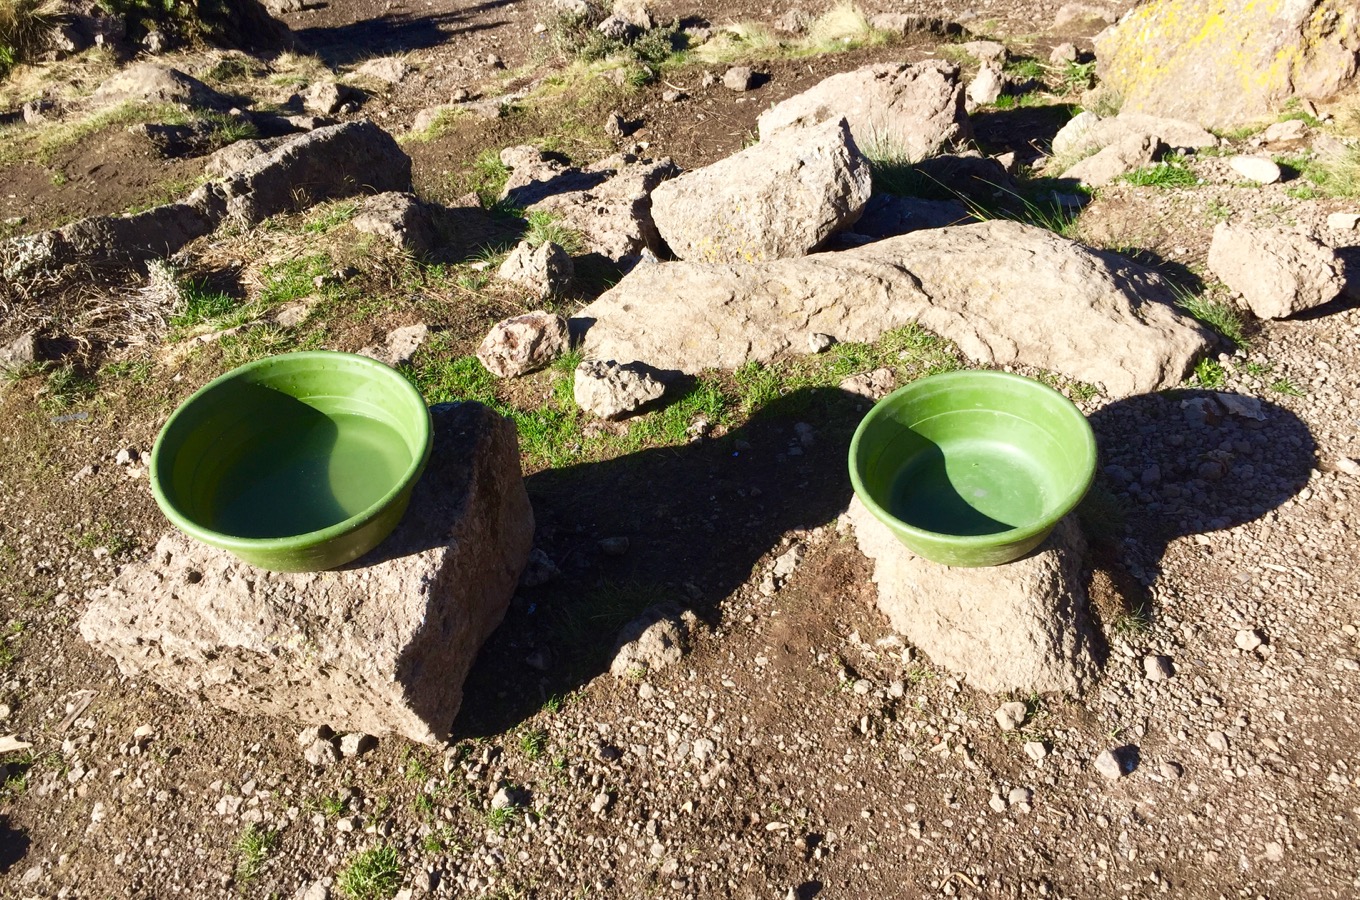 Cuvettes pour se laver pendant l’ascension du Kilimandjaro